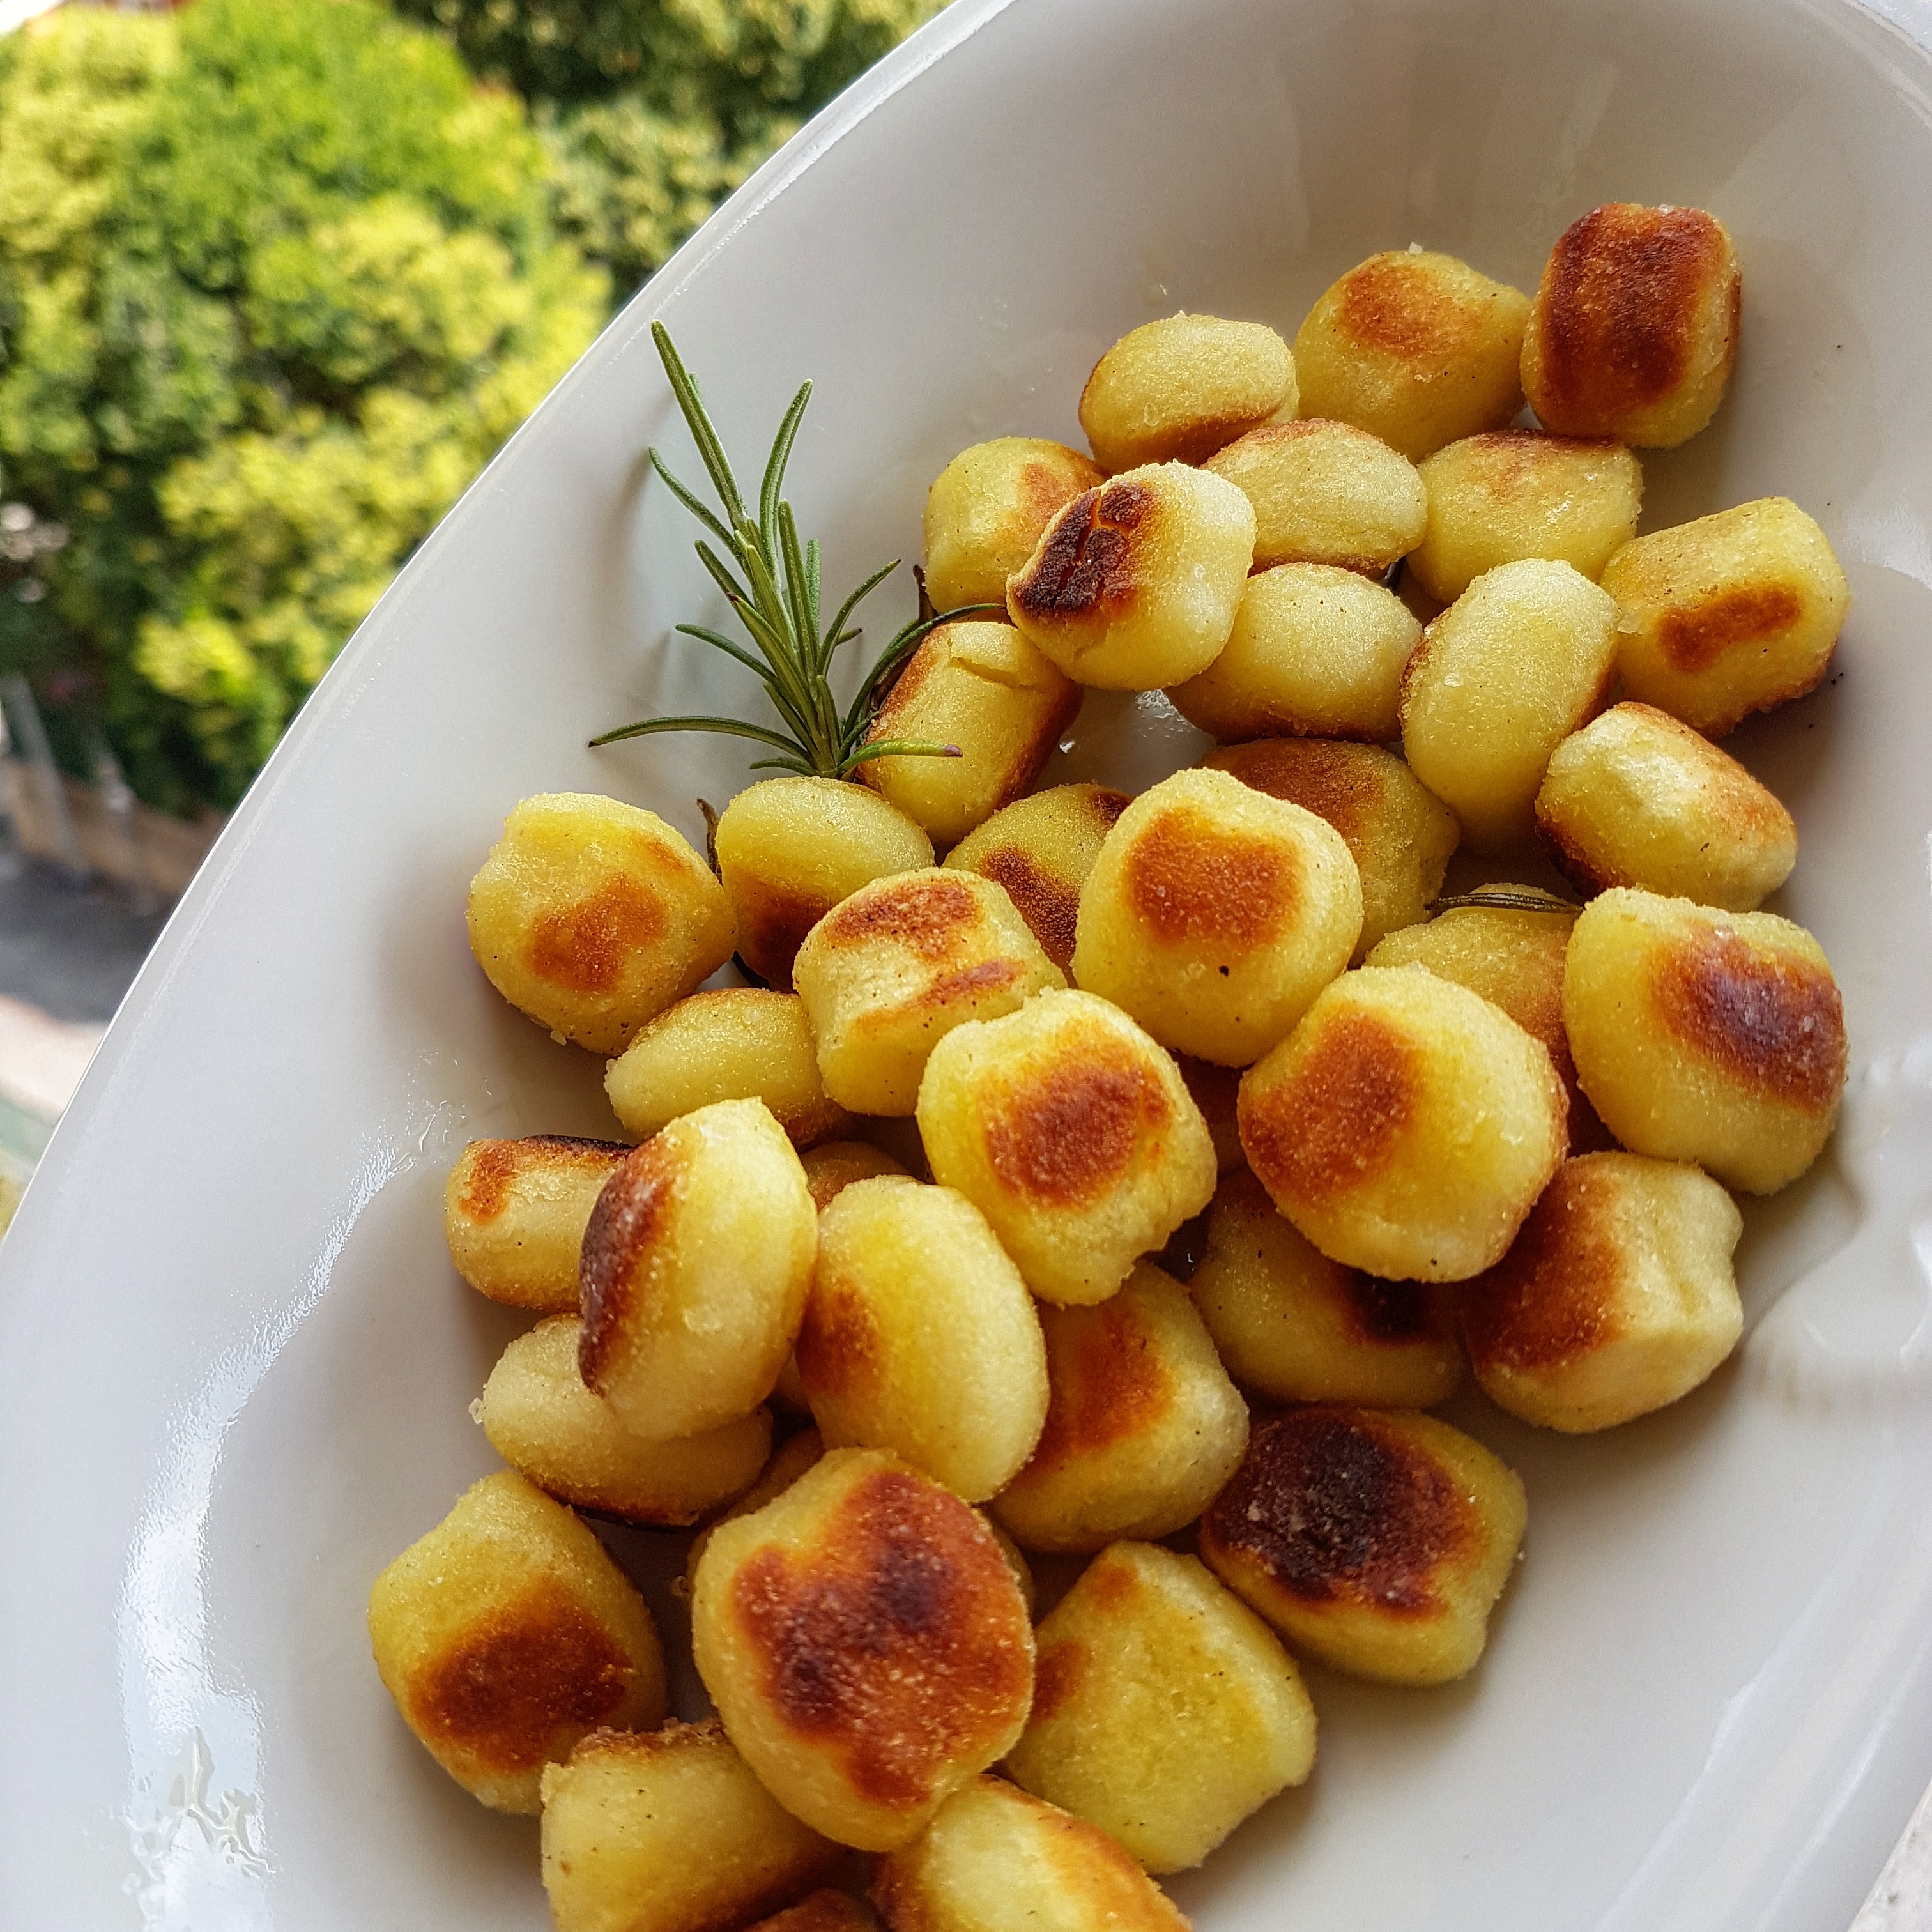 Gnocchi di patate al forno | Ricetta ed ingredienti dei Foodblogger ...